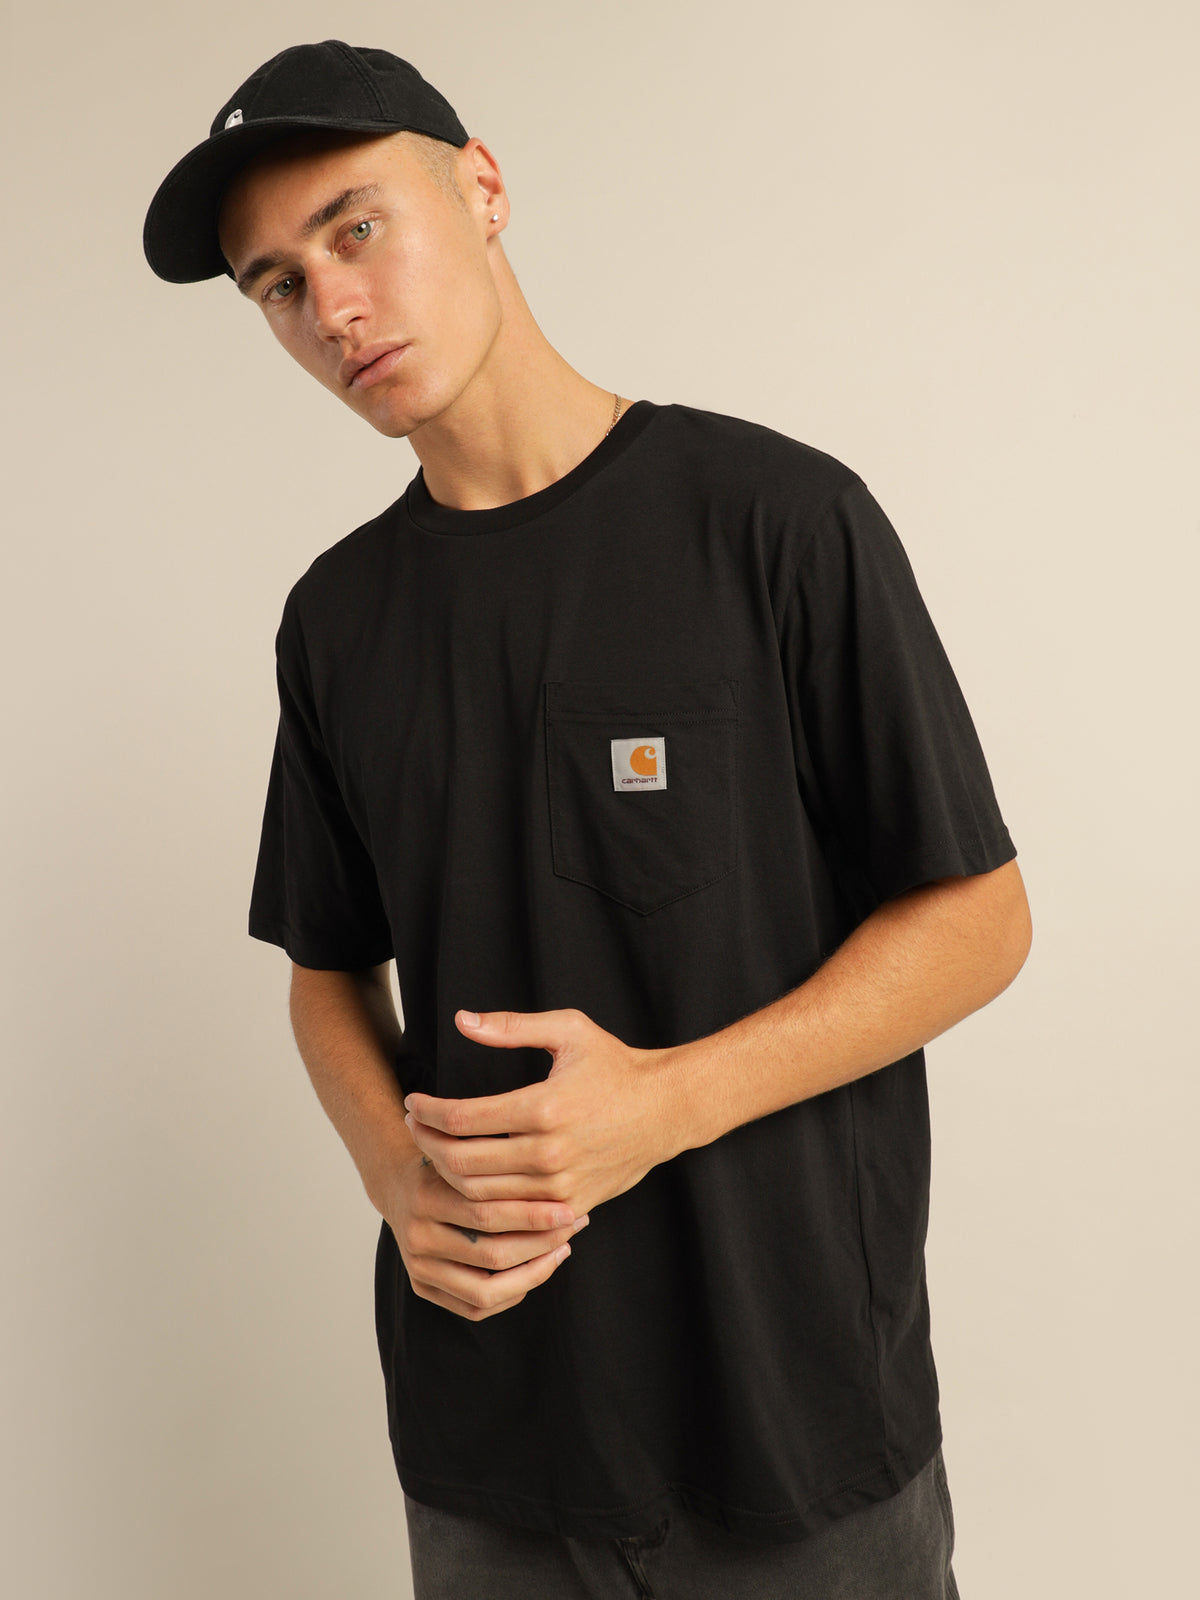 Pocket Short Sleeve T-Shirt in Black